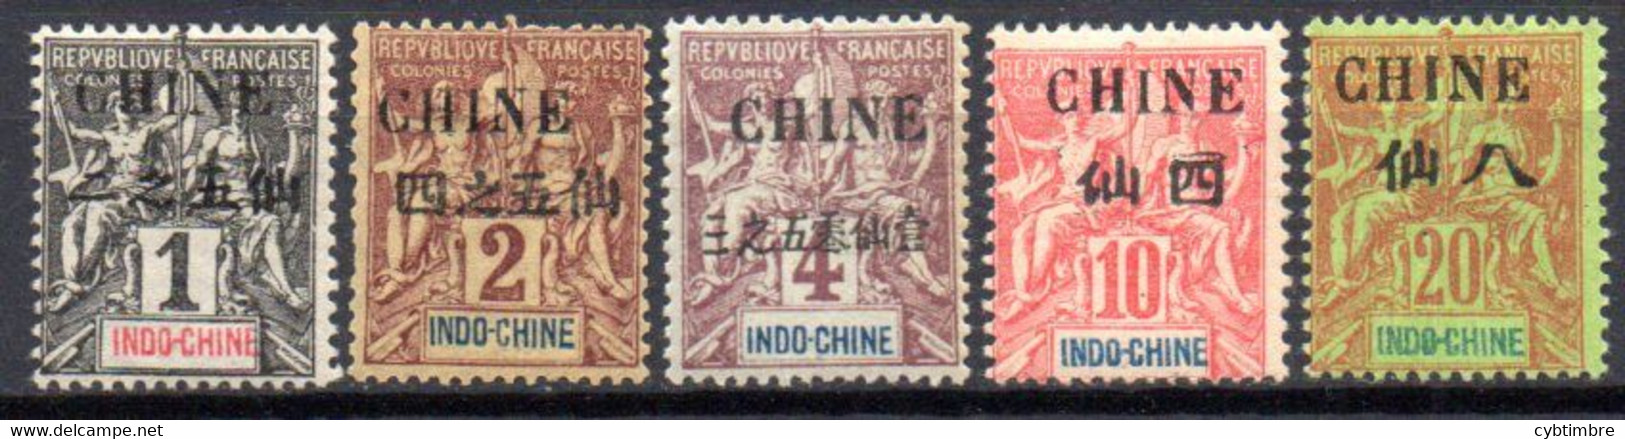 Chine: Yvert N° 49/54*; Le 20(*) 5 Valeurs - Unused Stamps